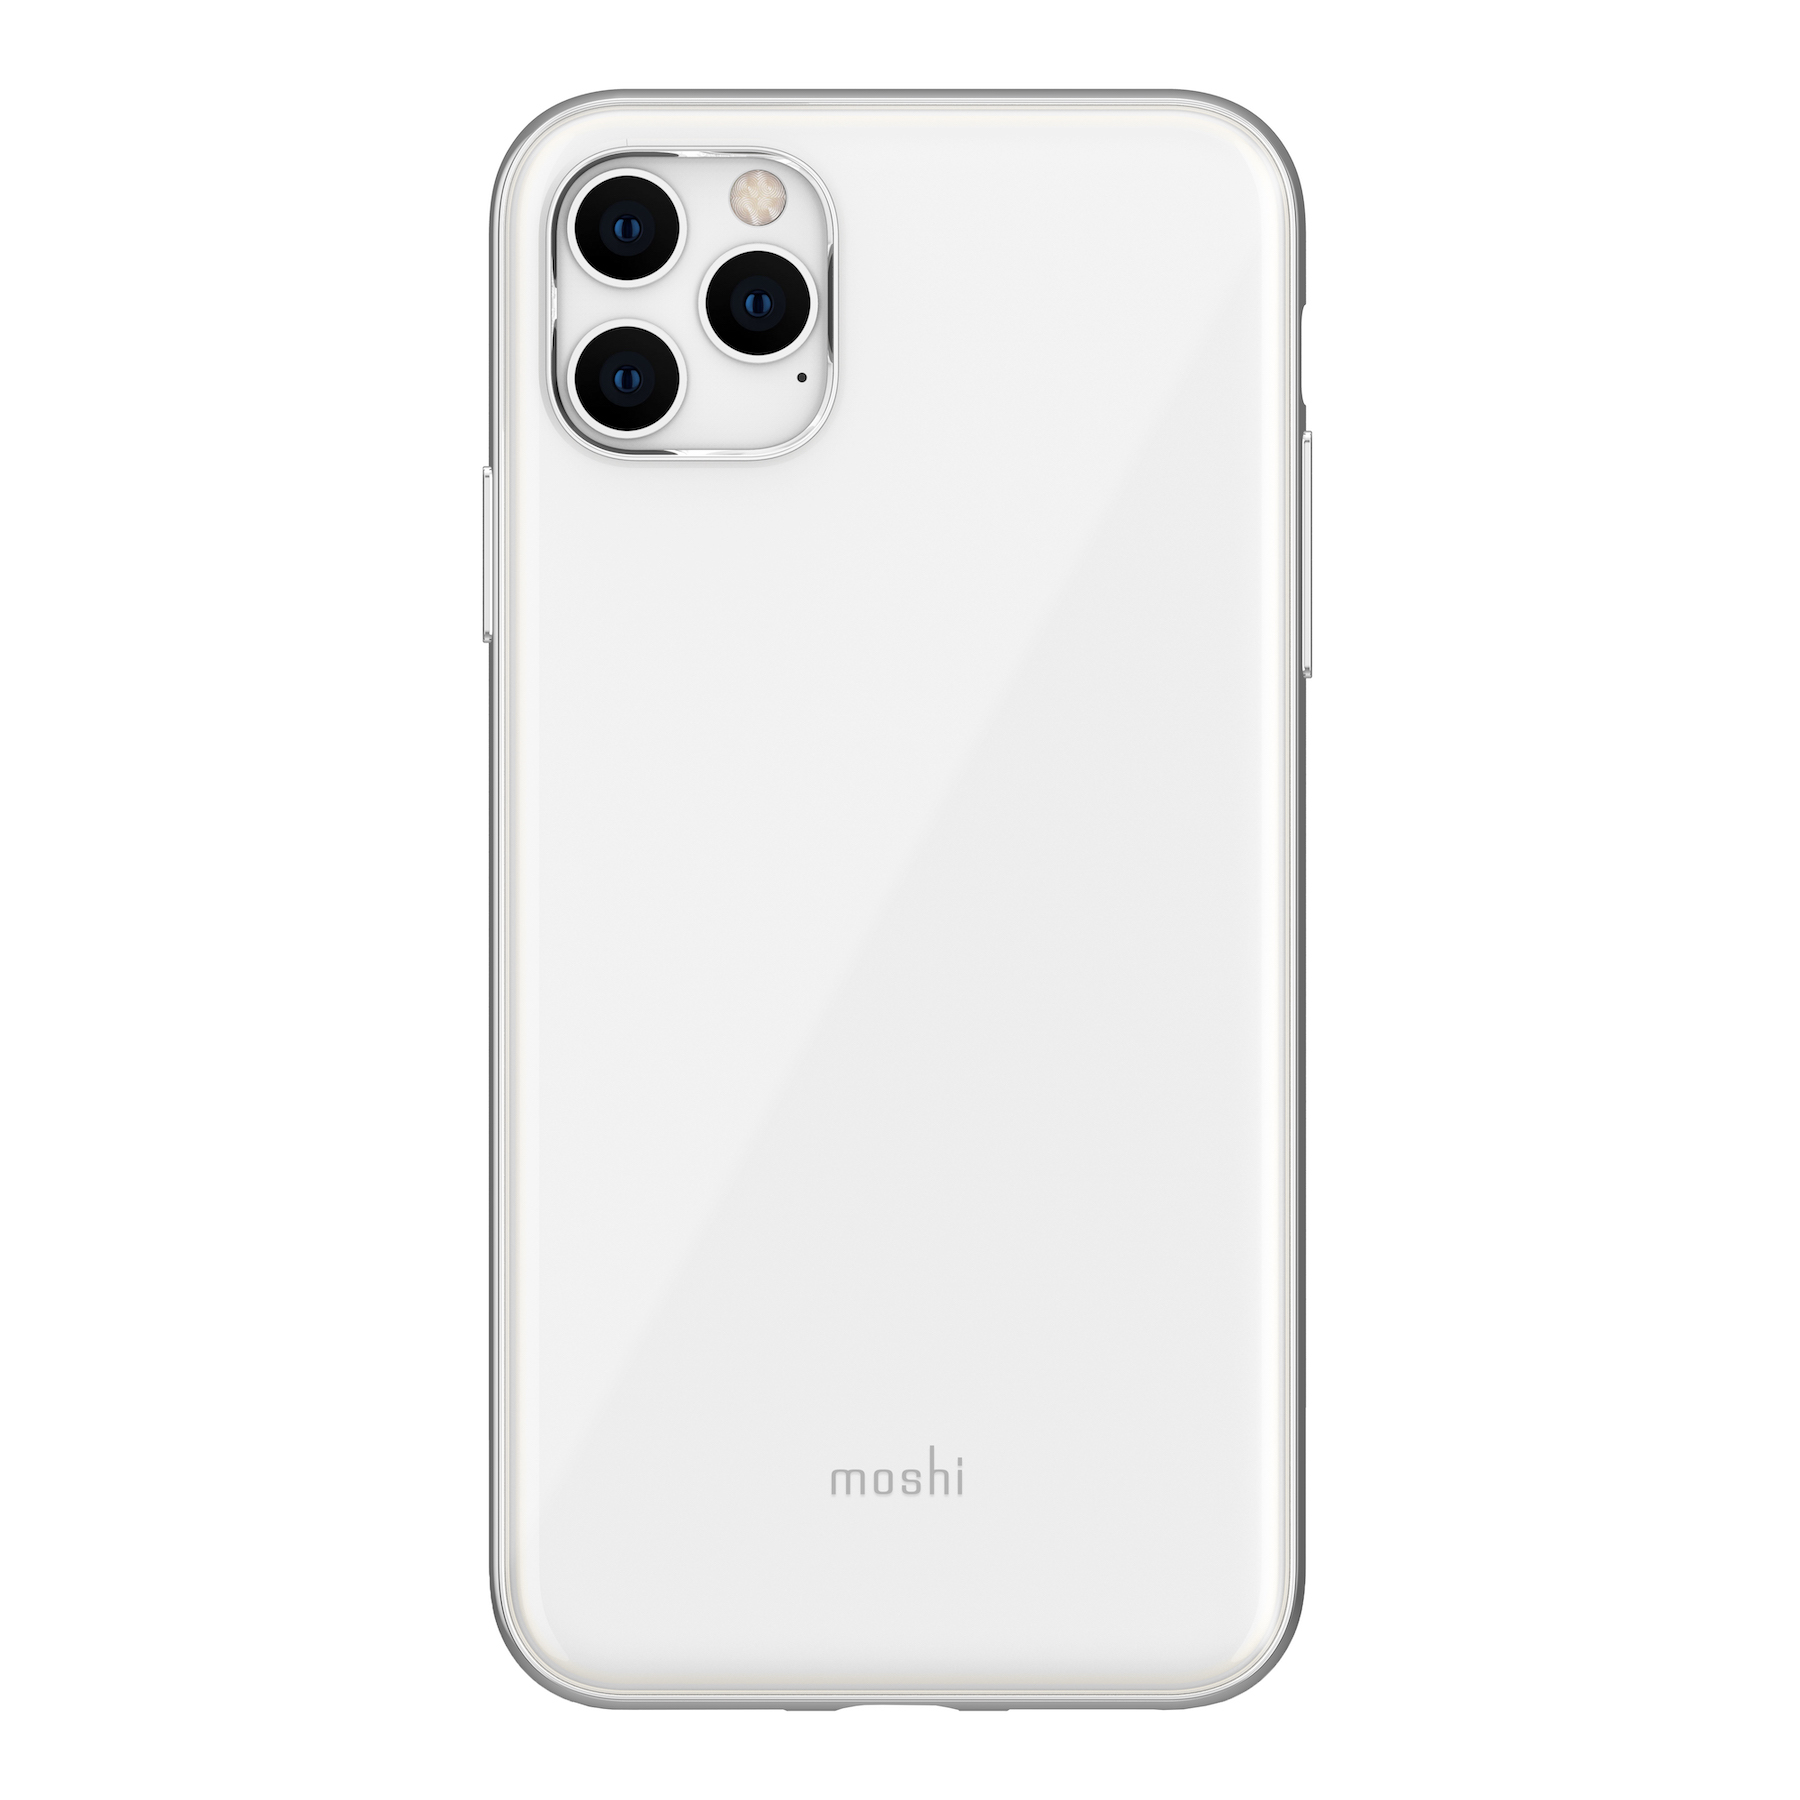 کاور موشی مدل iGlaze مناسب برای گوشی موبایل اپل iPhone 11pro